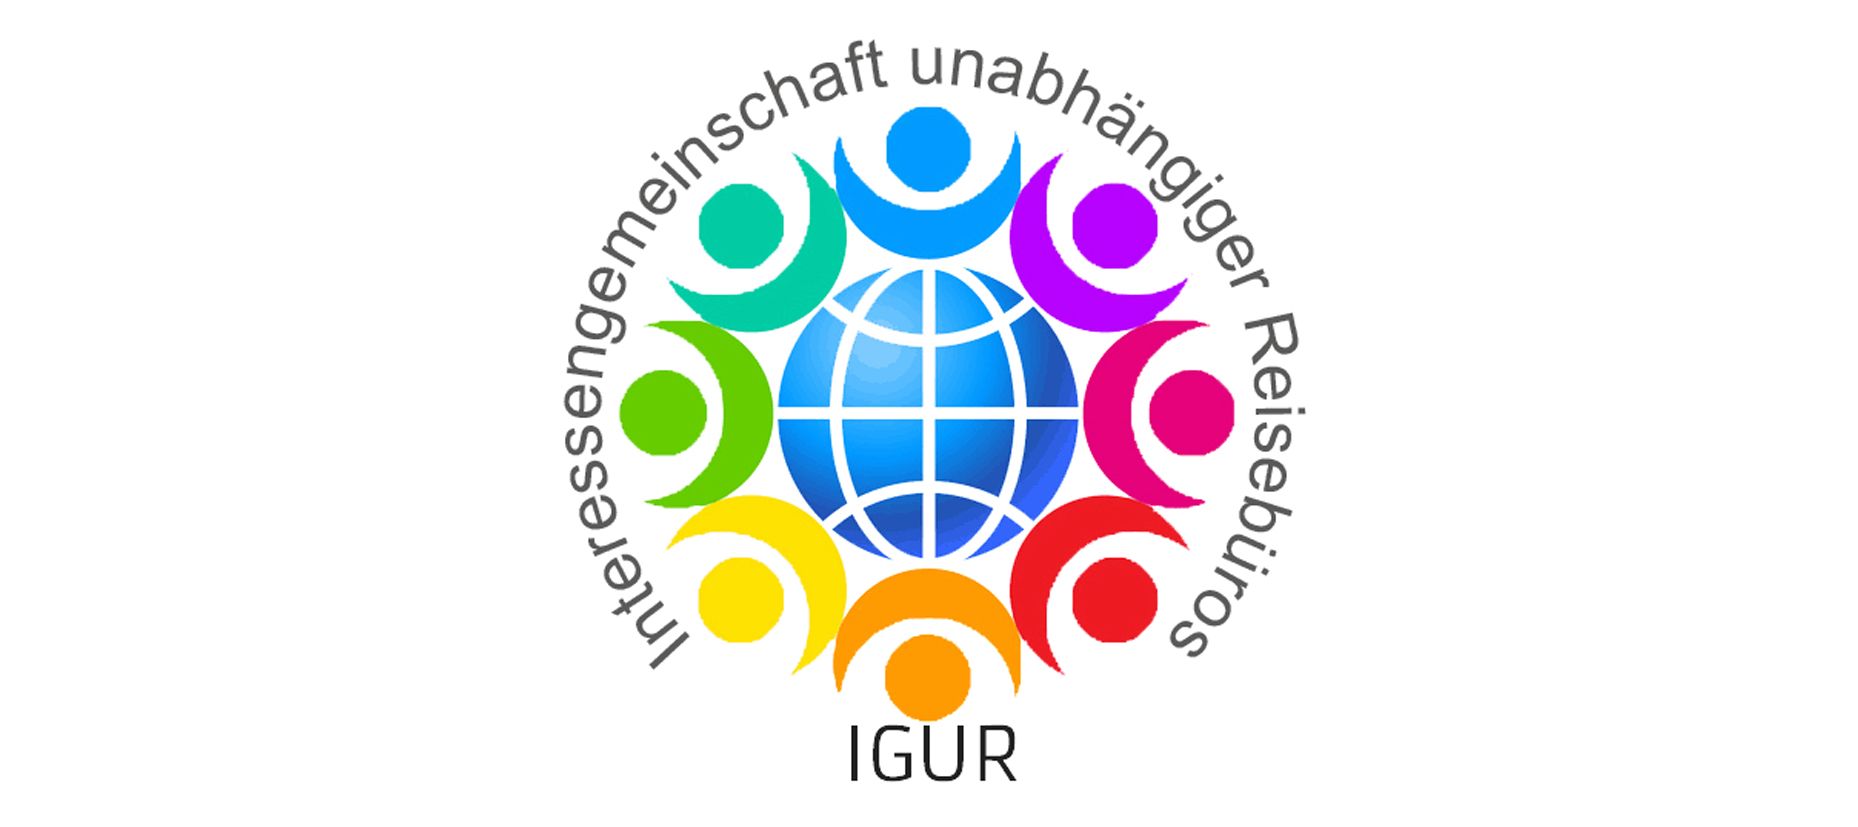 IGUR (Interessen Gemeinschaft Unabhängiger Reisebüros)